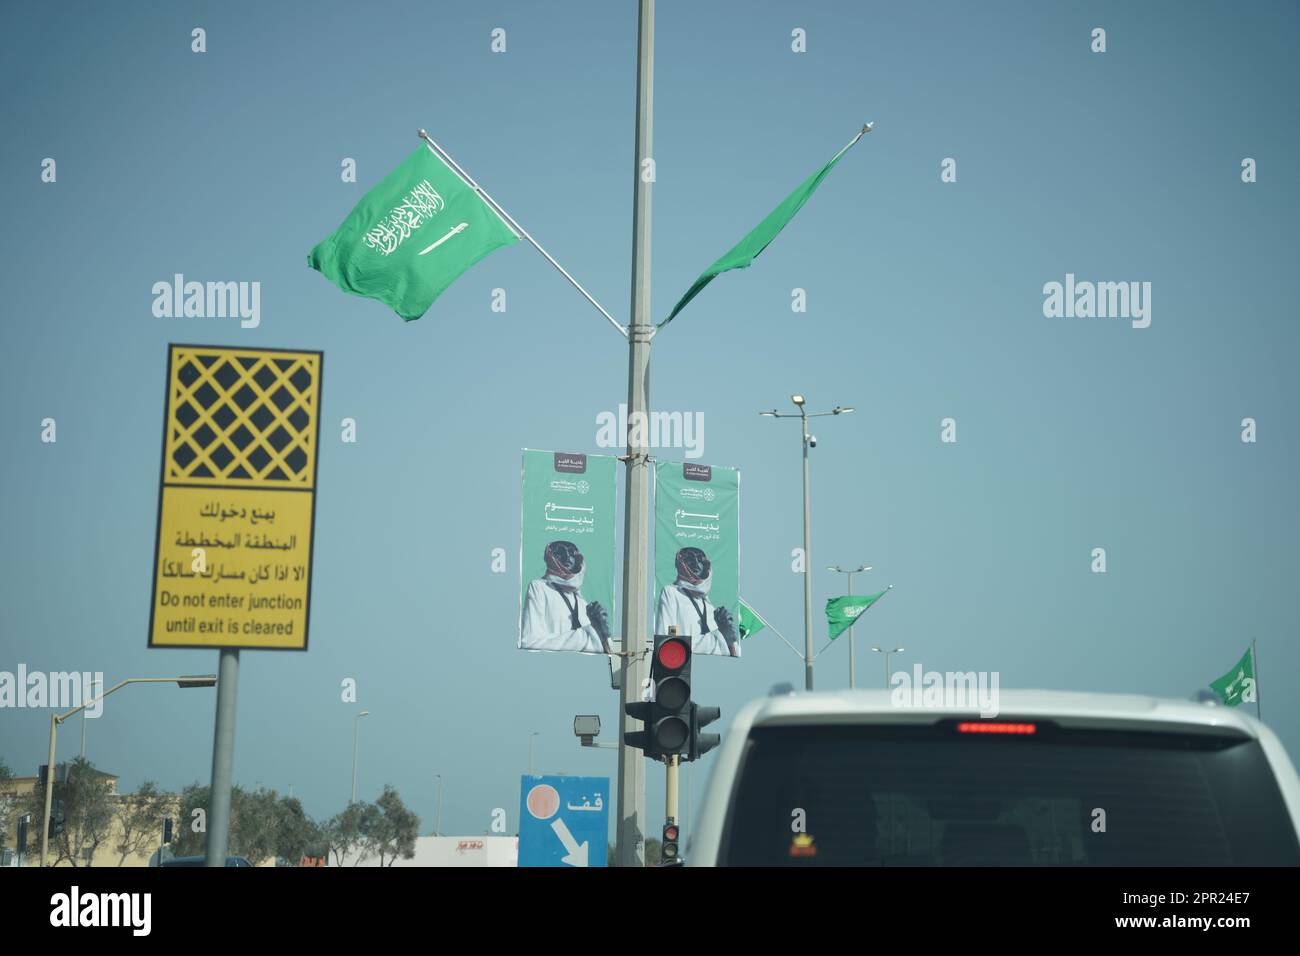 L'Arabie Saoudite a une vue sur la journée de fondation depuis la rue. Rue Khobar avec drapeaux saoudiens et des annonces de jour de fondation dans la route de circulation et le matin. Banque D'Images